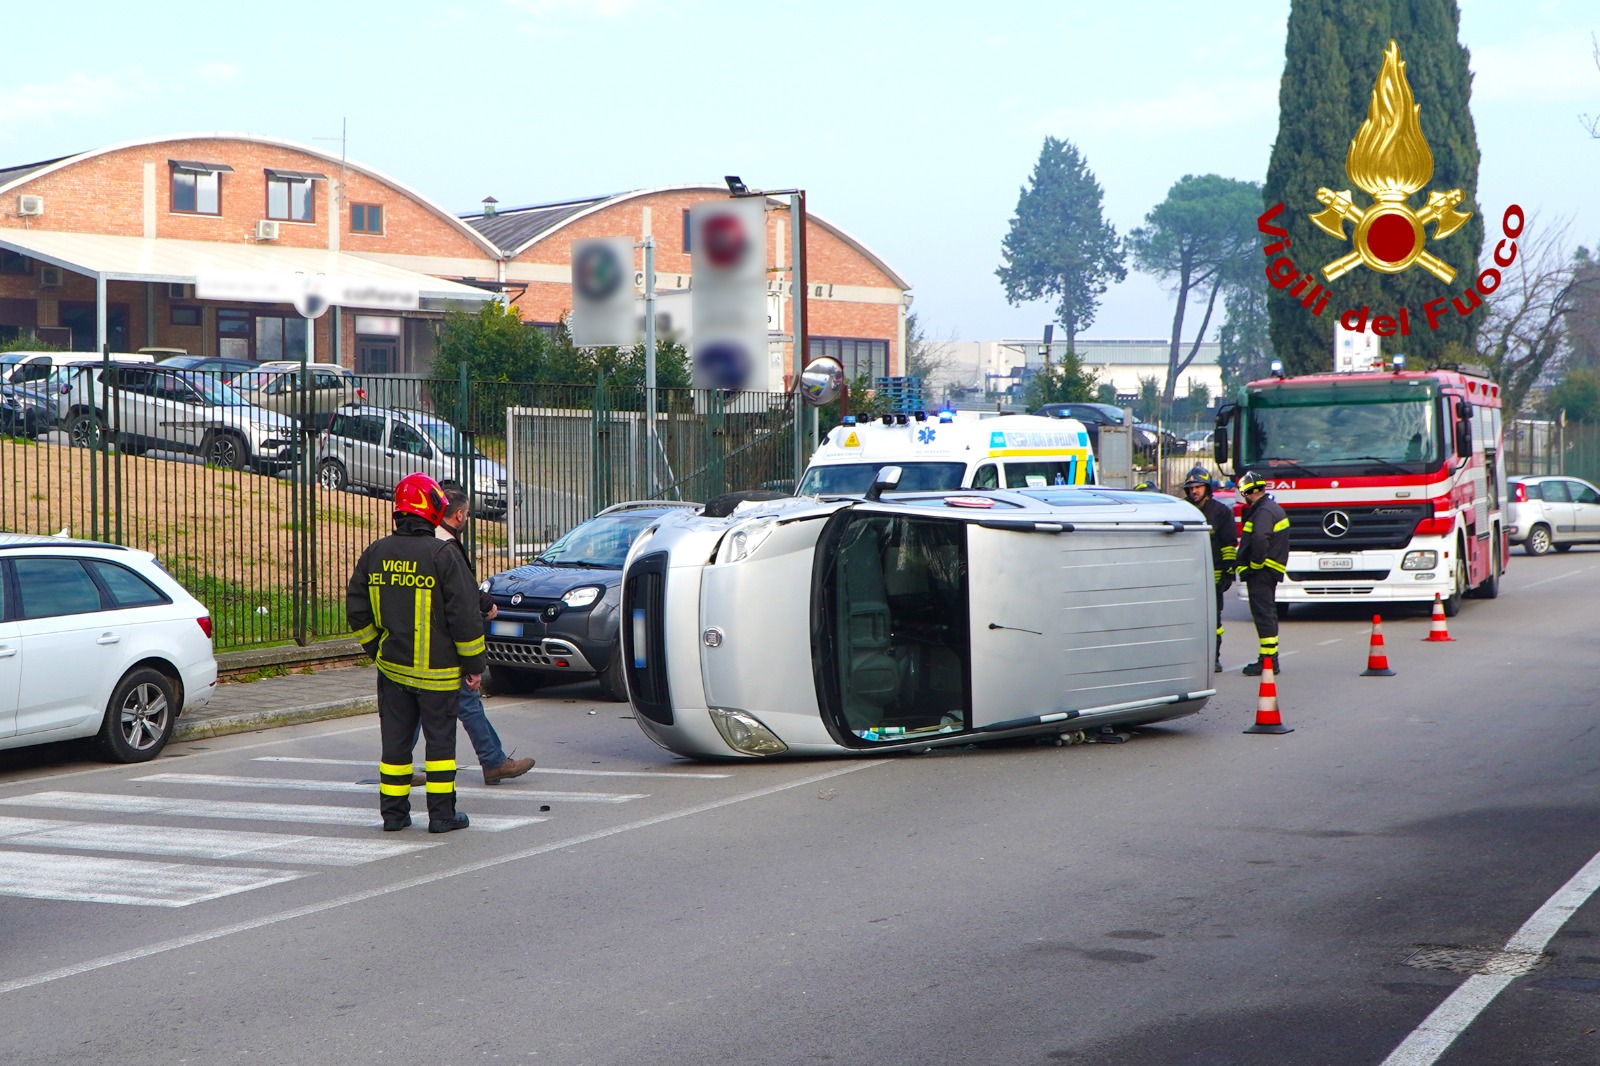 Avellino| Incidente tra due auto in via Pianodardine, uomo ferito trasportato al Moscati